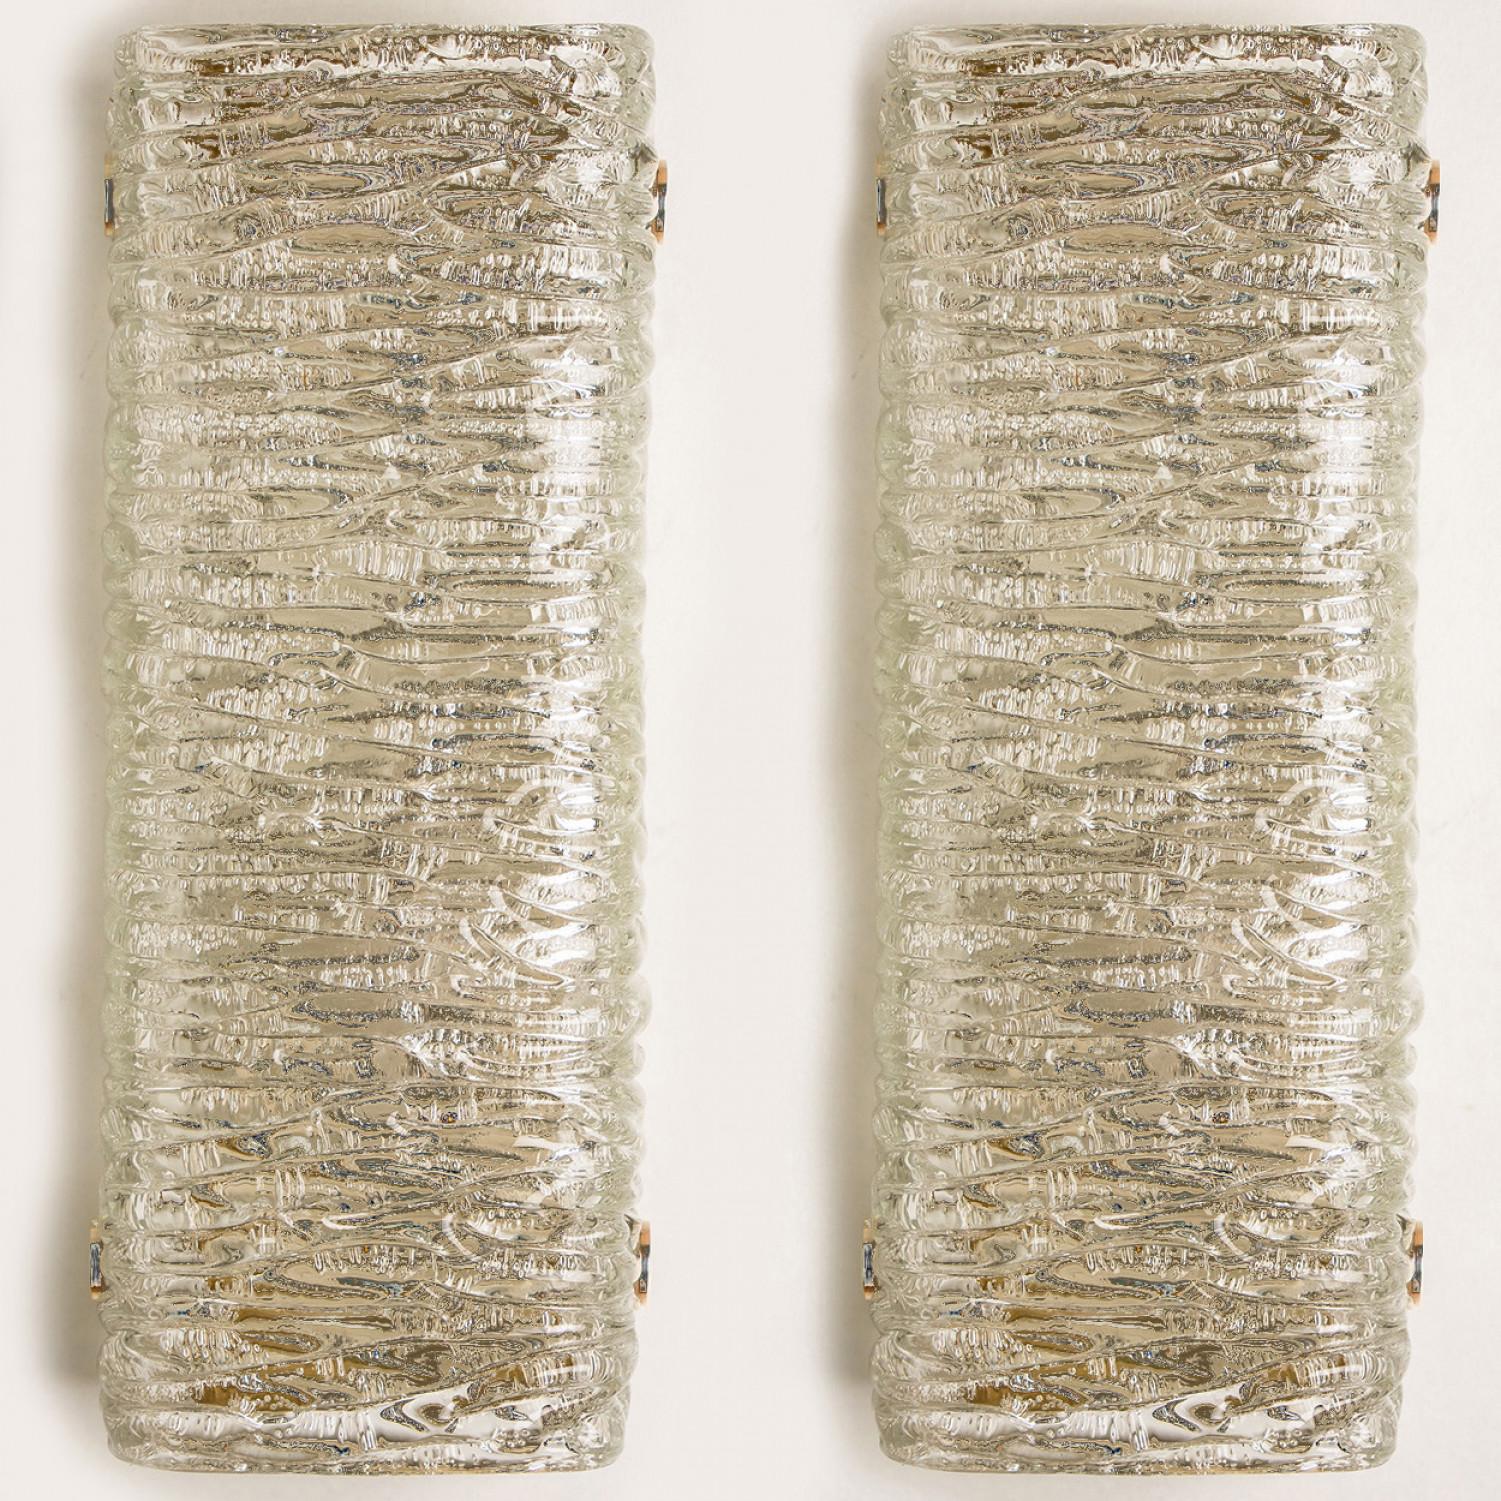 Rechteckige Wave-Glasarmaturen von J.T. Kalmar, Wien, Österreich, hergestellt ca. 1960. Das Glas weist eine schöne Wellenstruktur auf, die einen diffusen Lichteffekt und ein schönes Muster an Decke, Wänden und Boden erzeugt.
Die stilvolle Eleganz